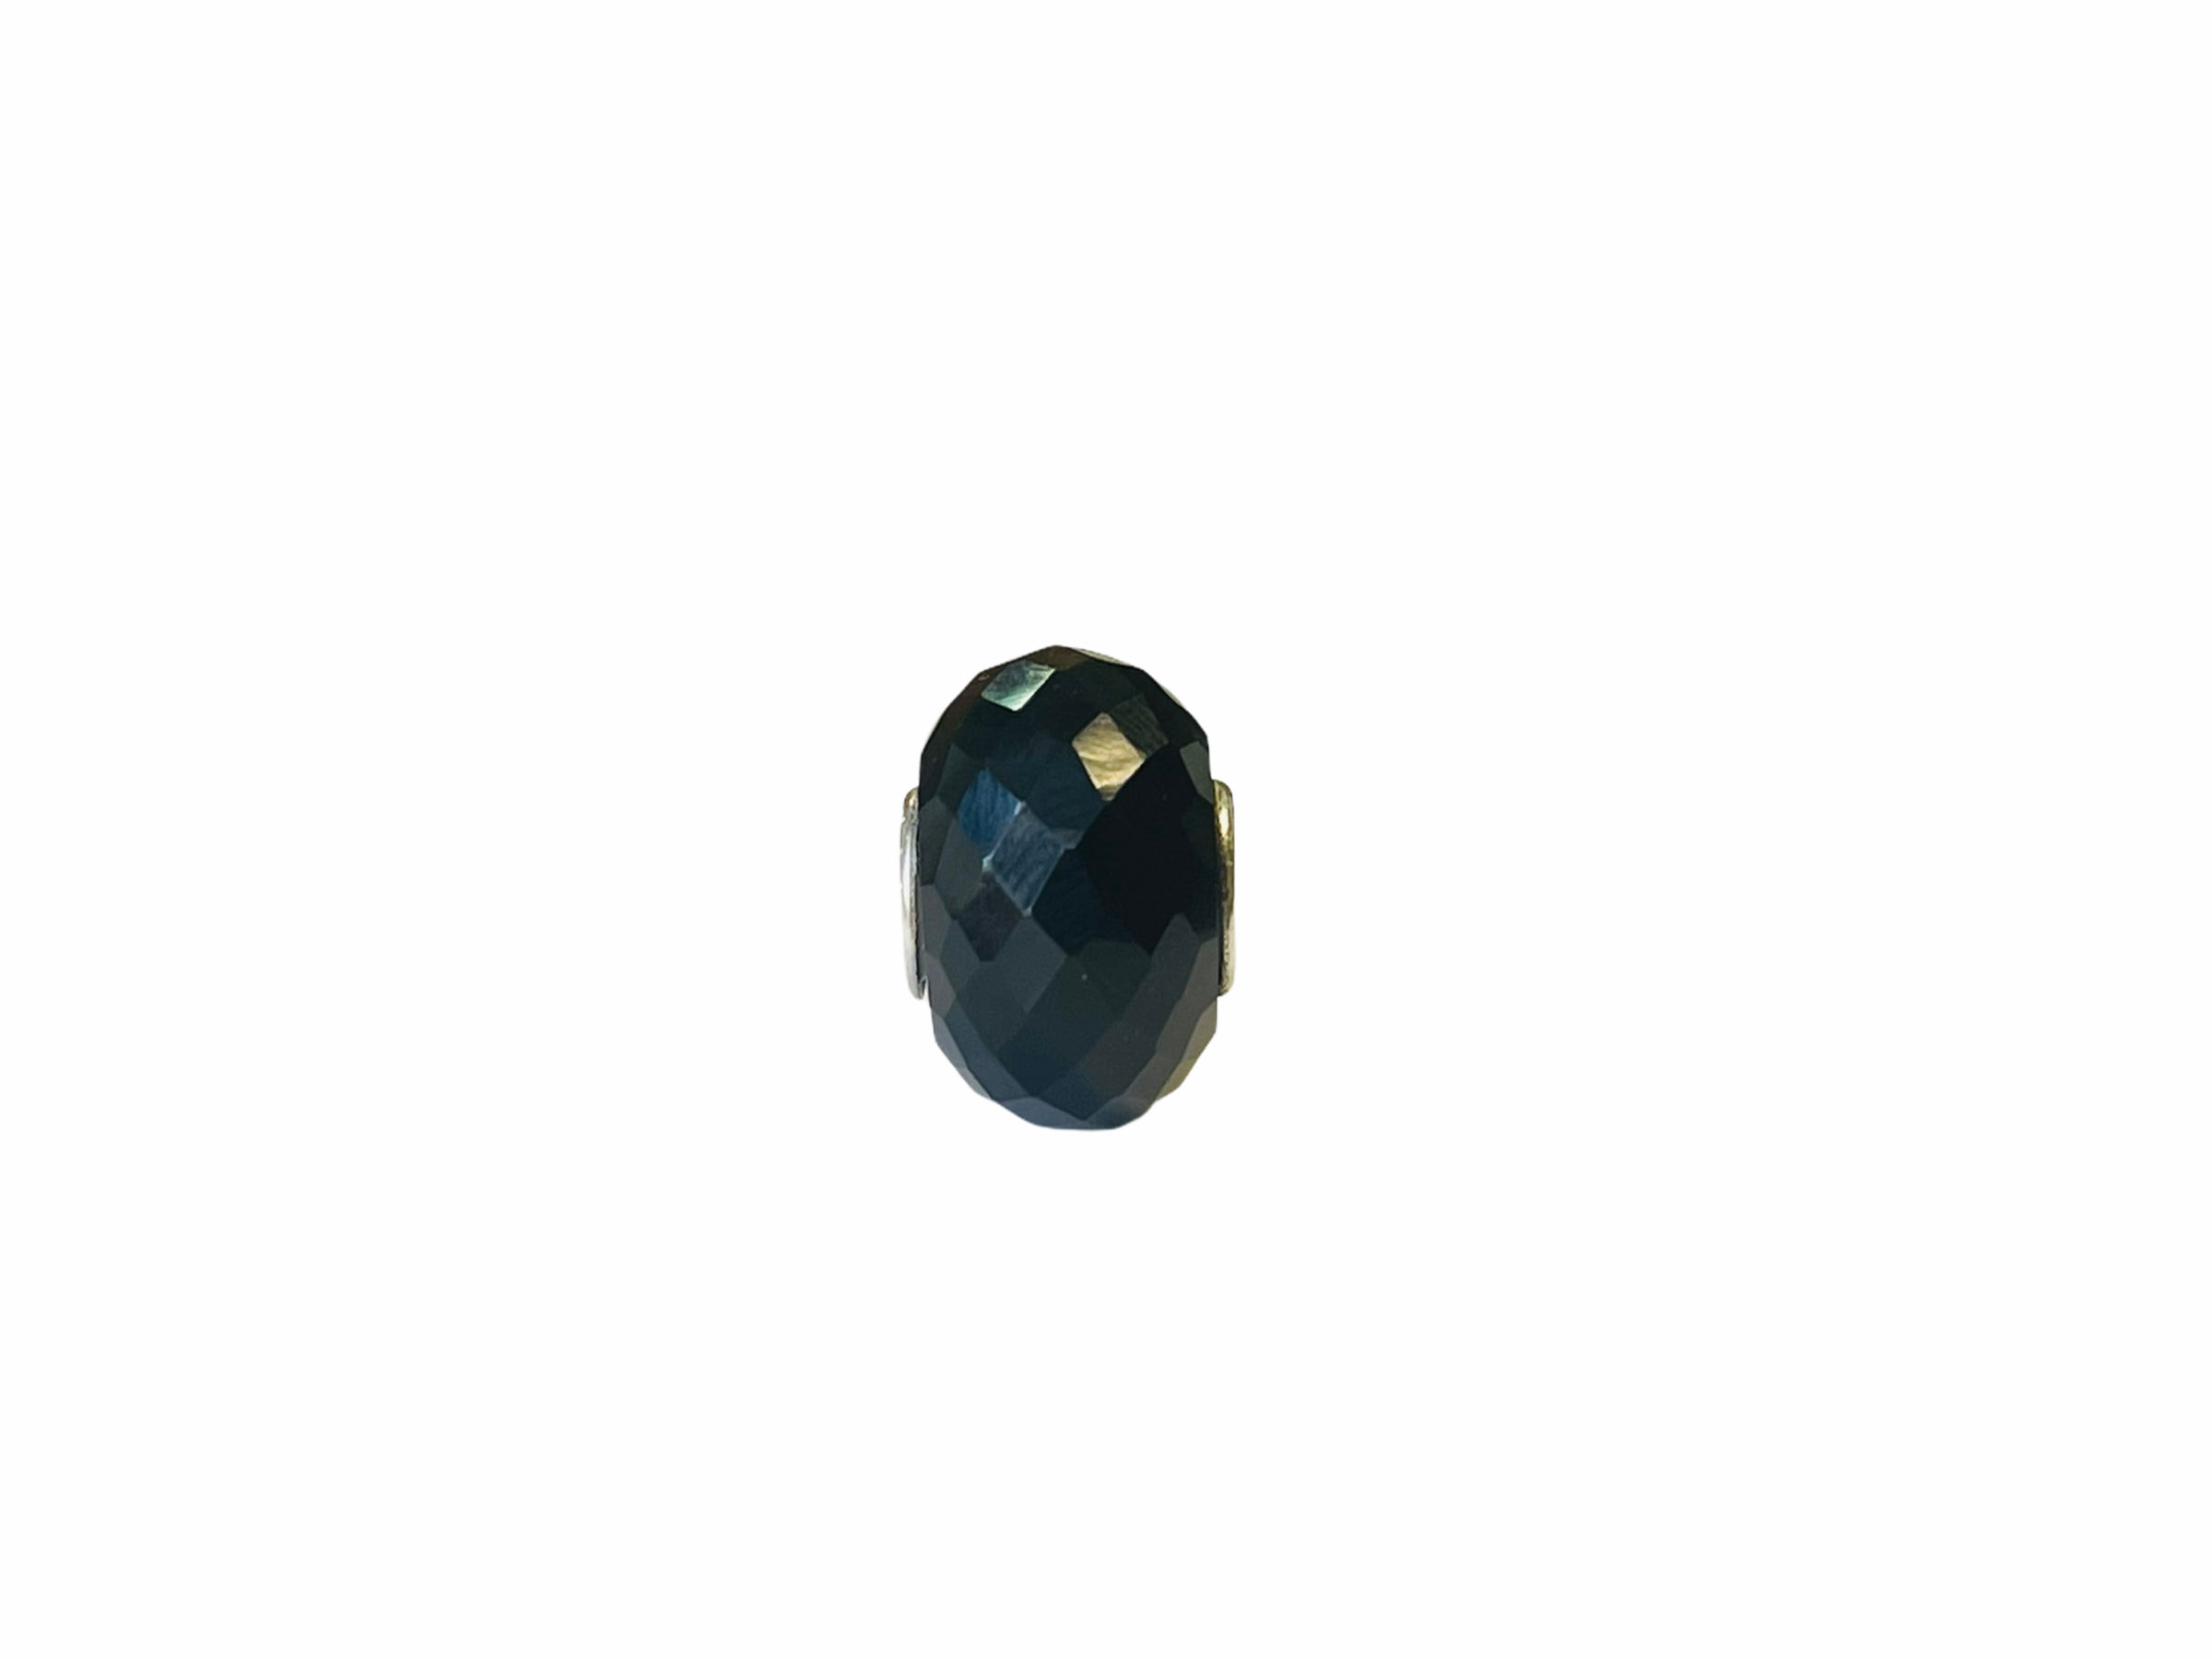 Black Onyx Valkyrie Gems Beads 2